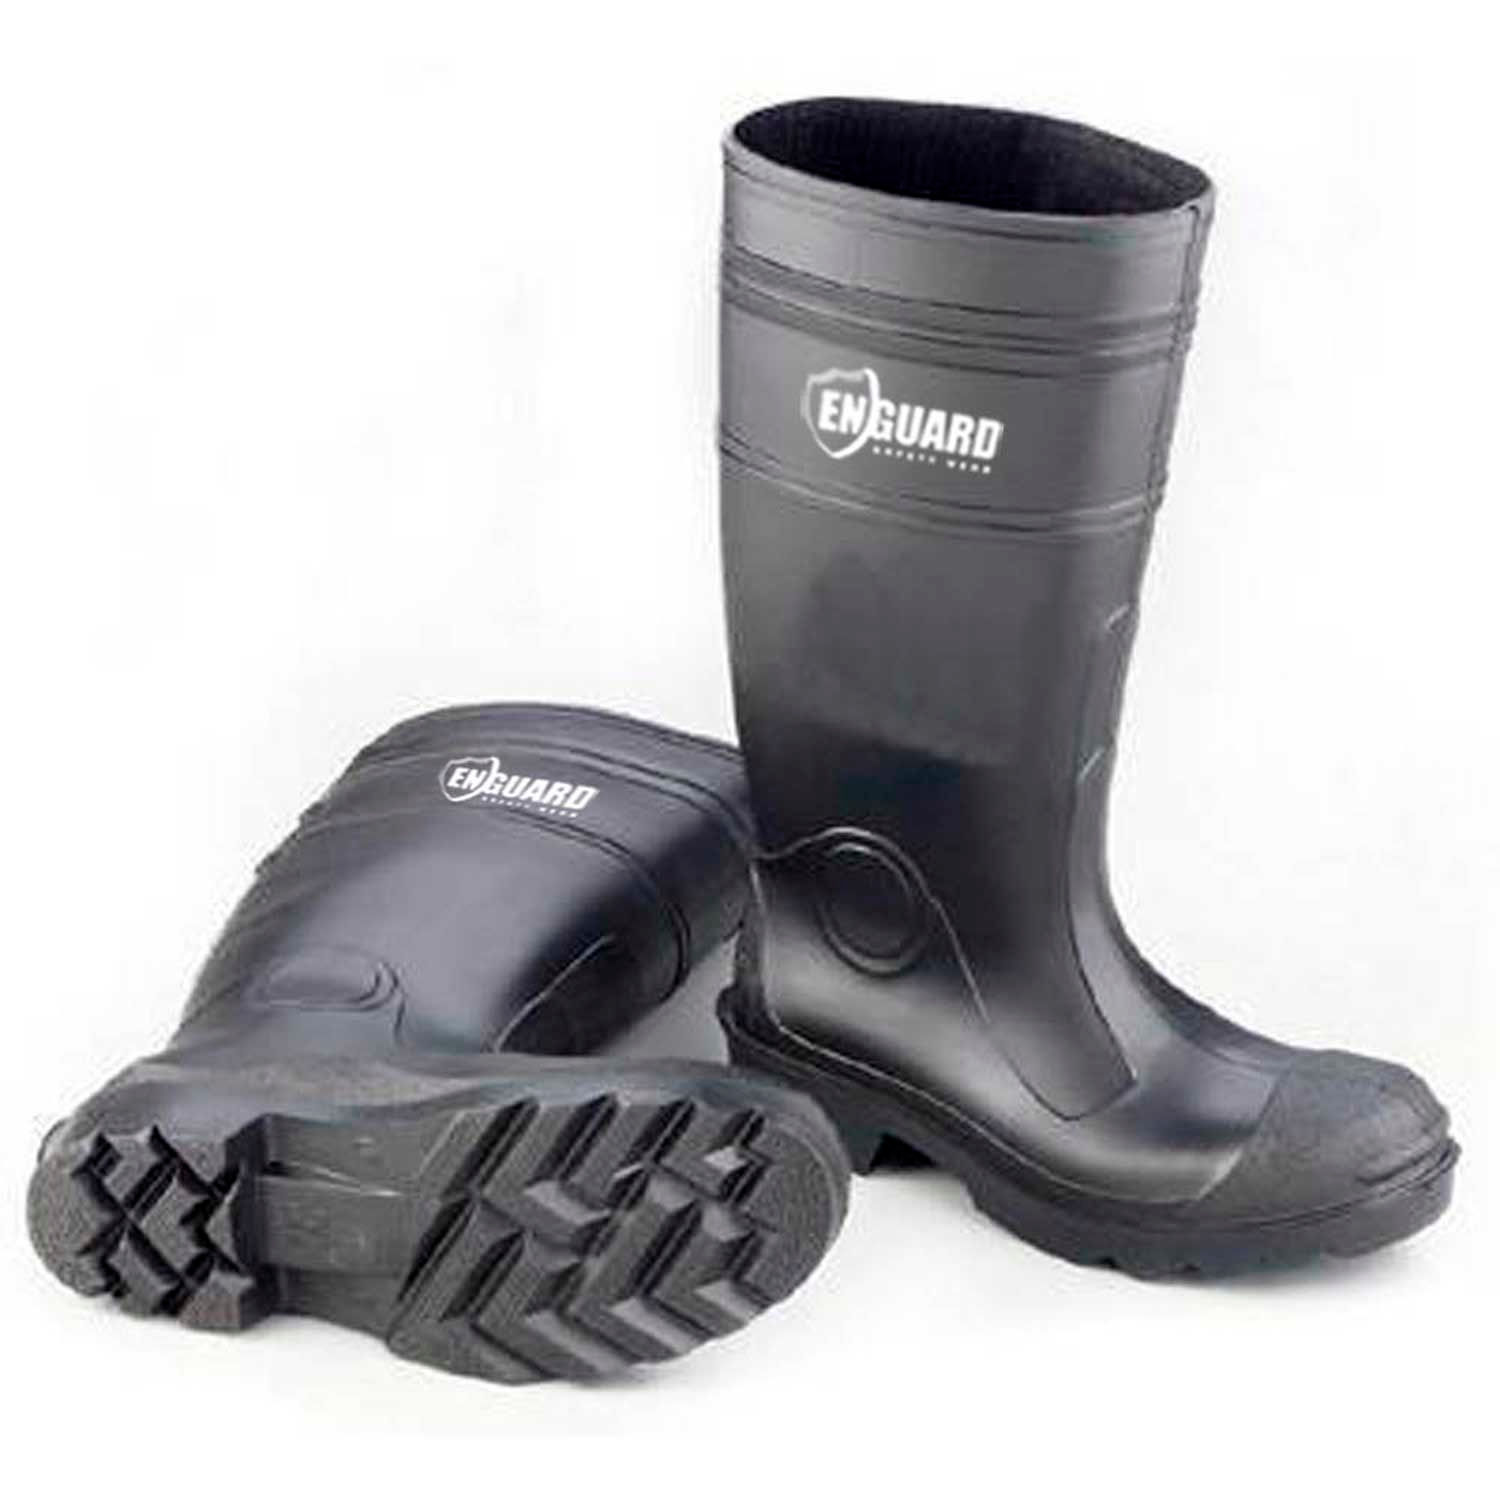 Enguard PVC Steel Toe Waterproof Boots 